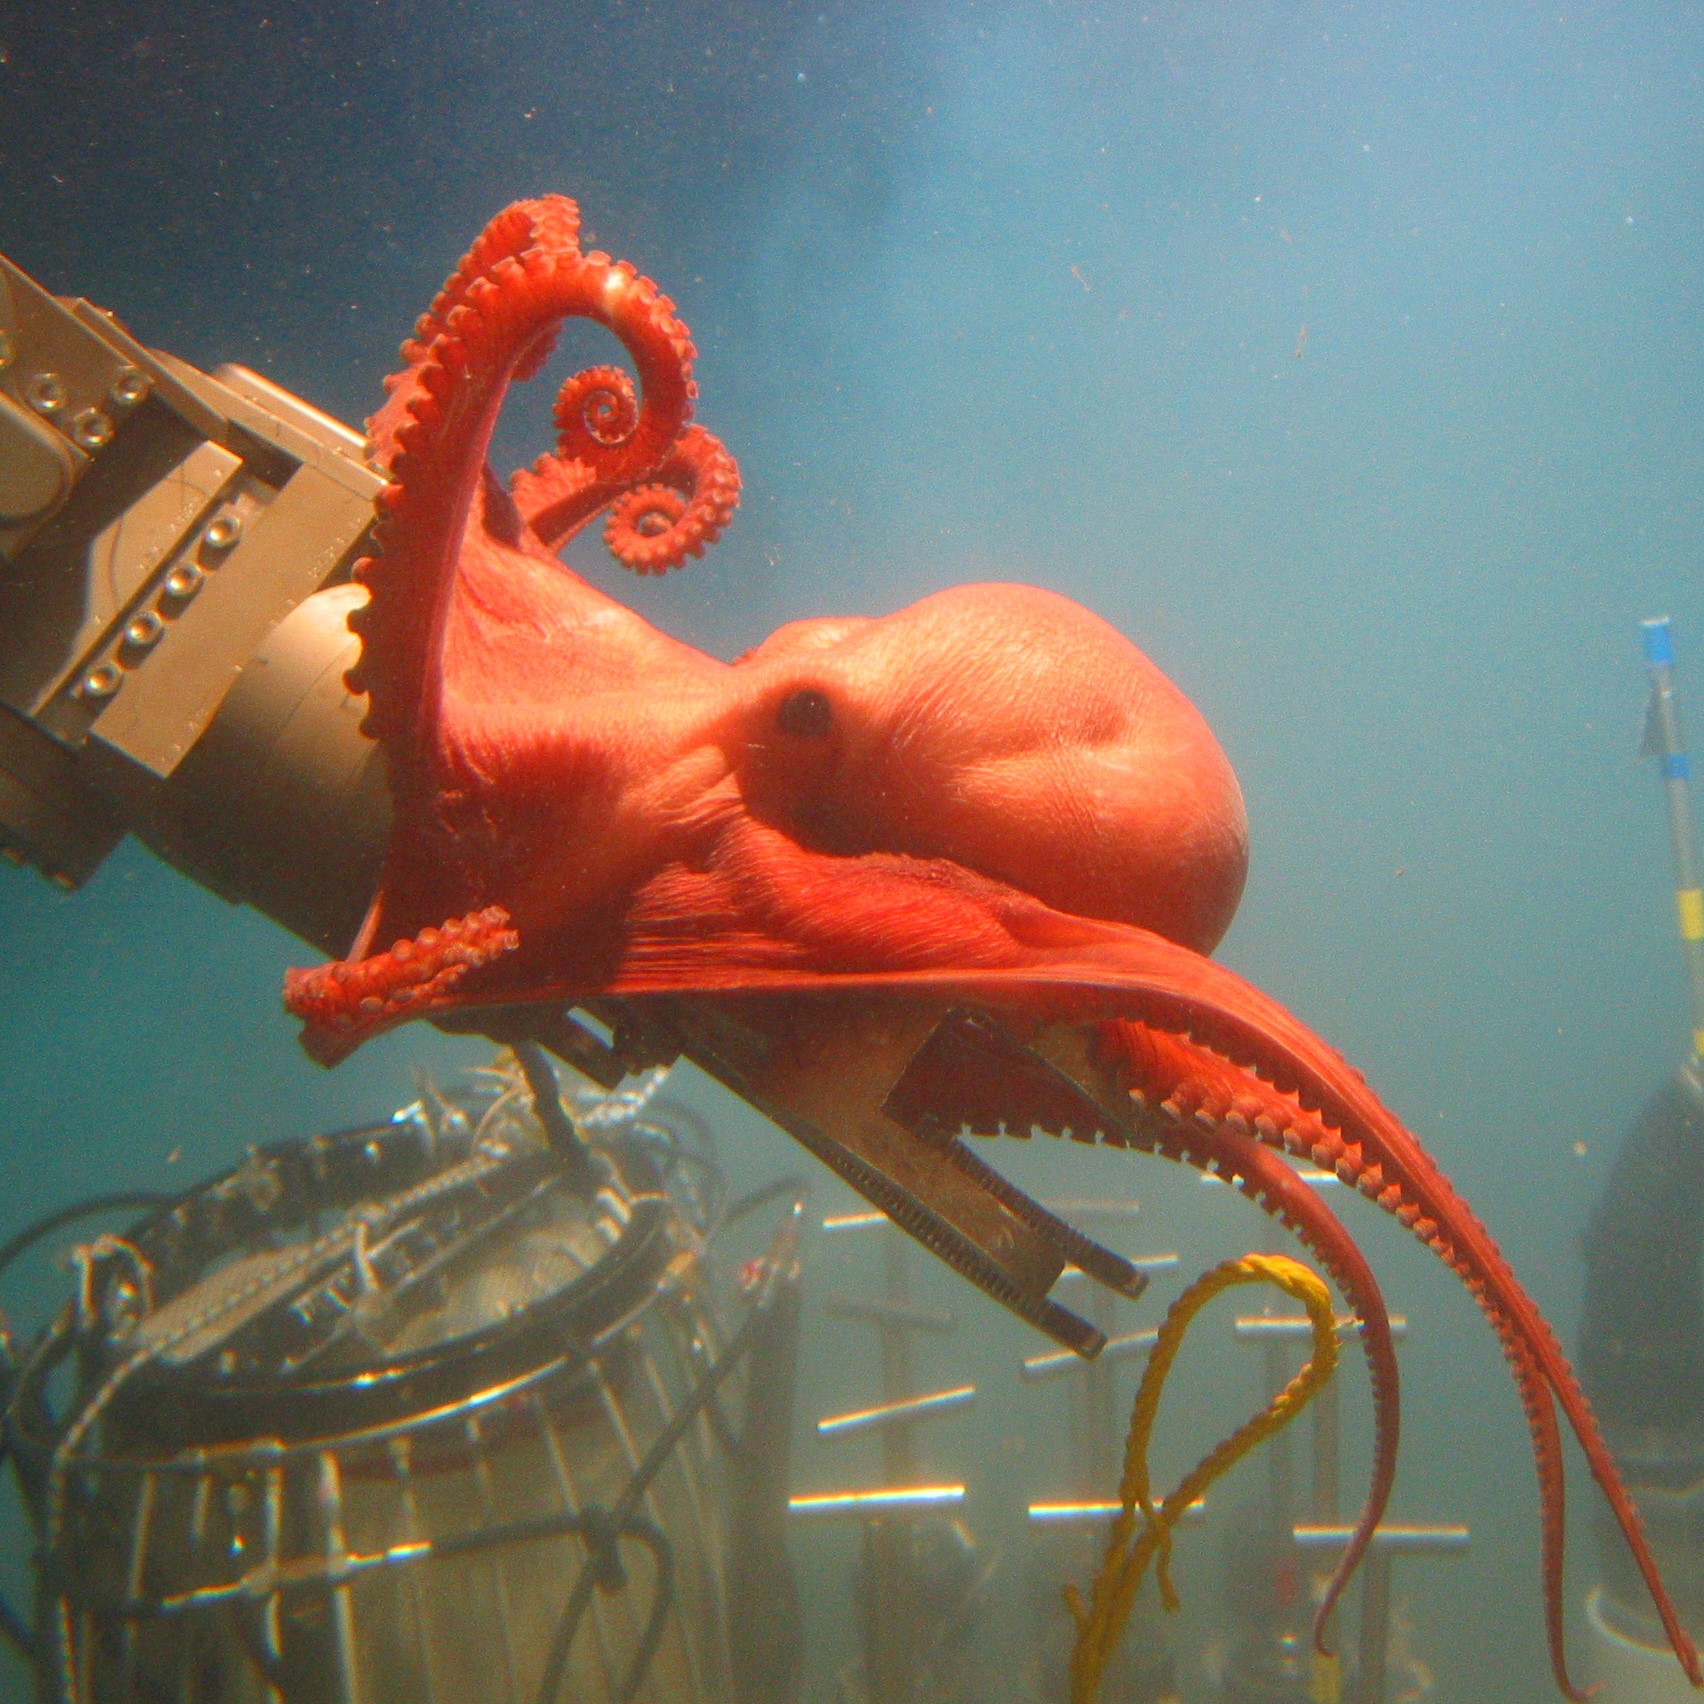 NOAA海洋探险家:2006年远征到深坡日志